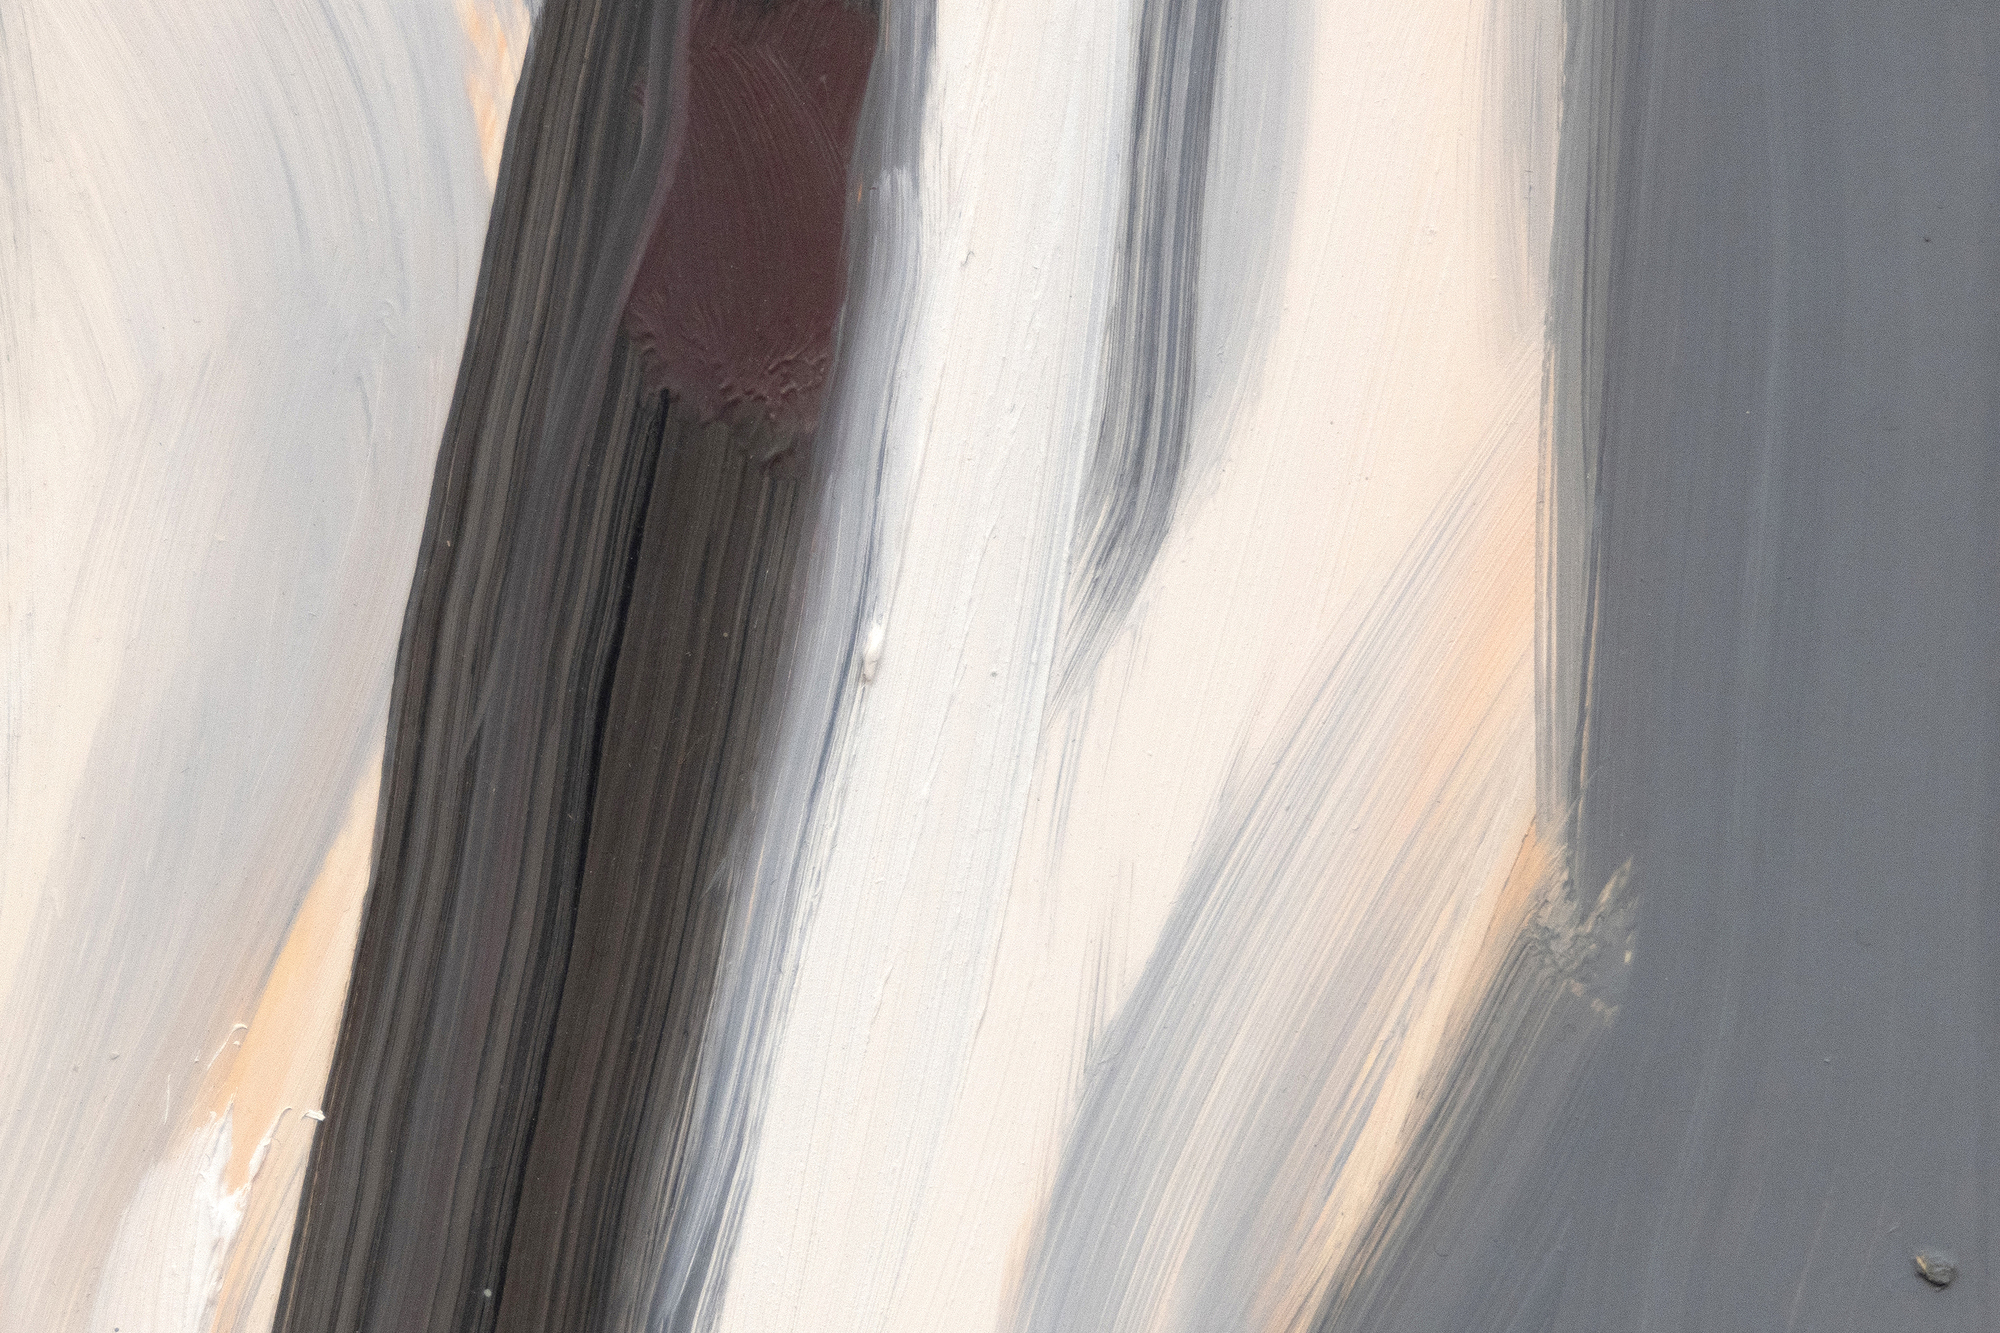 أليكس كاتز - بيتر - زيت على لوح ماسونيت - 15 7/8 × 7 1/8 بوصة.